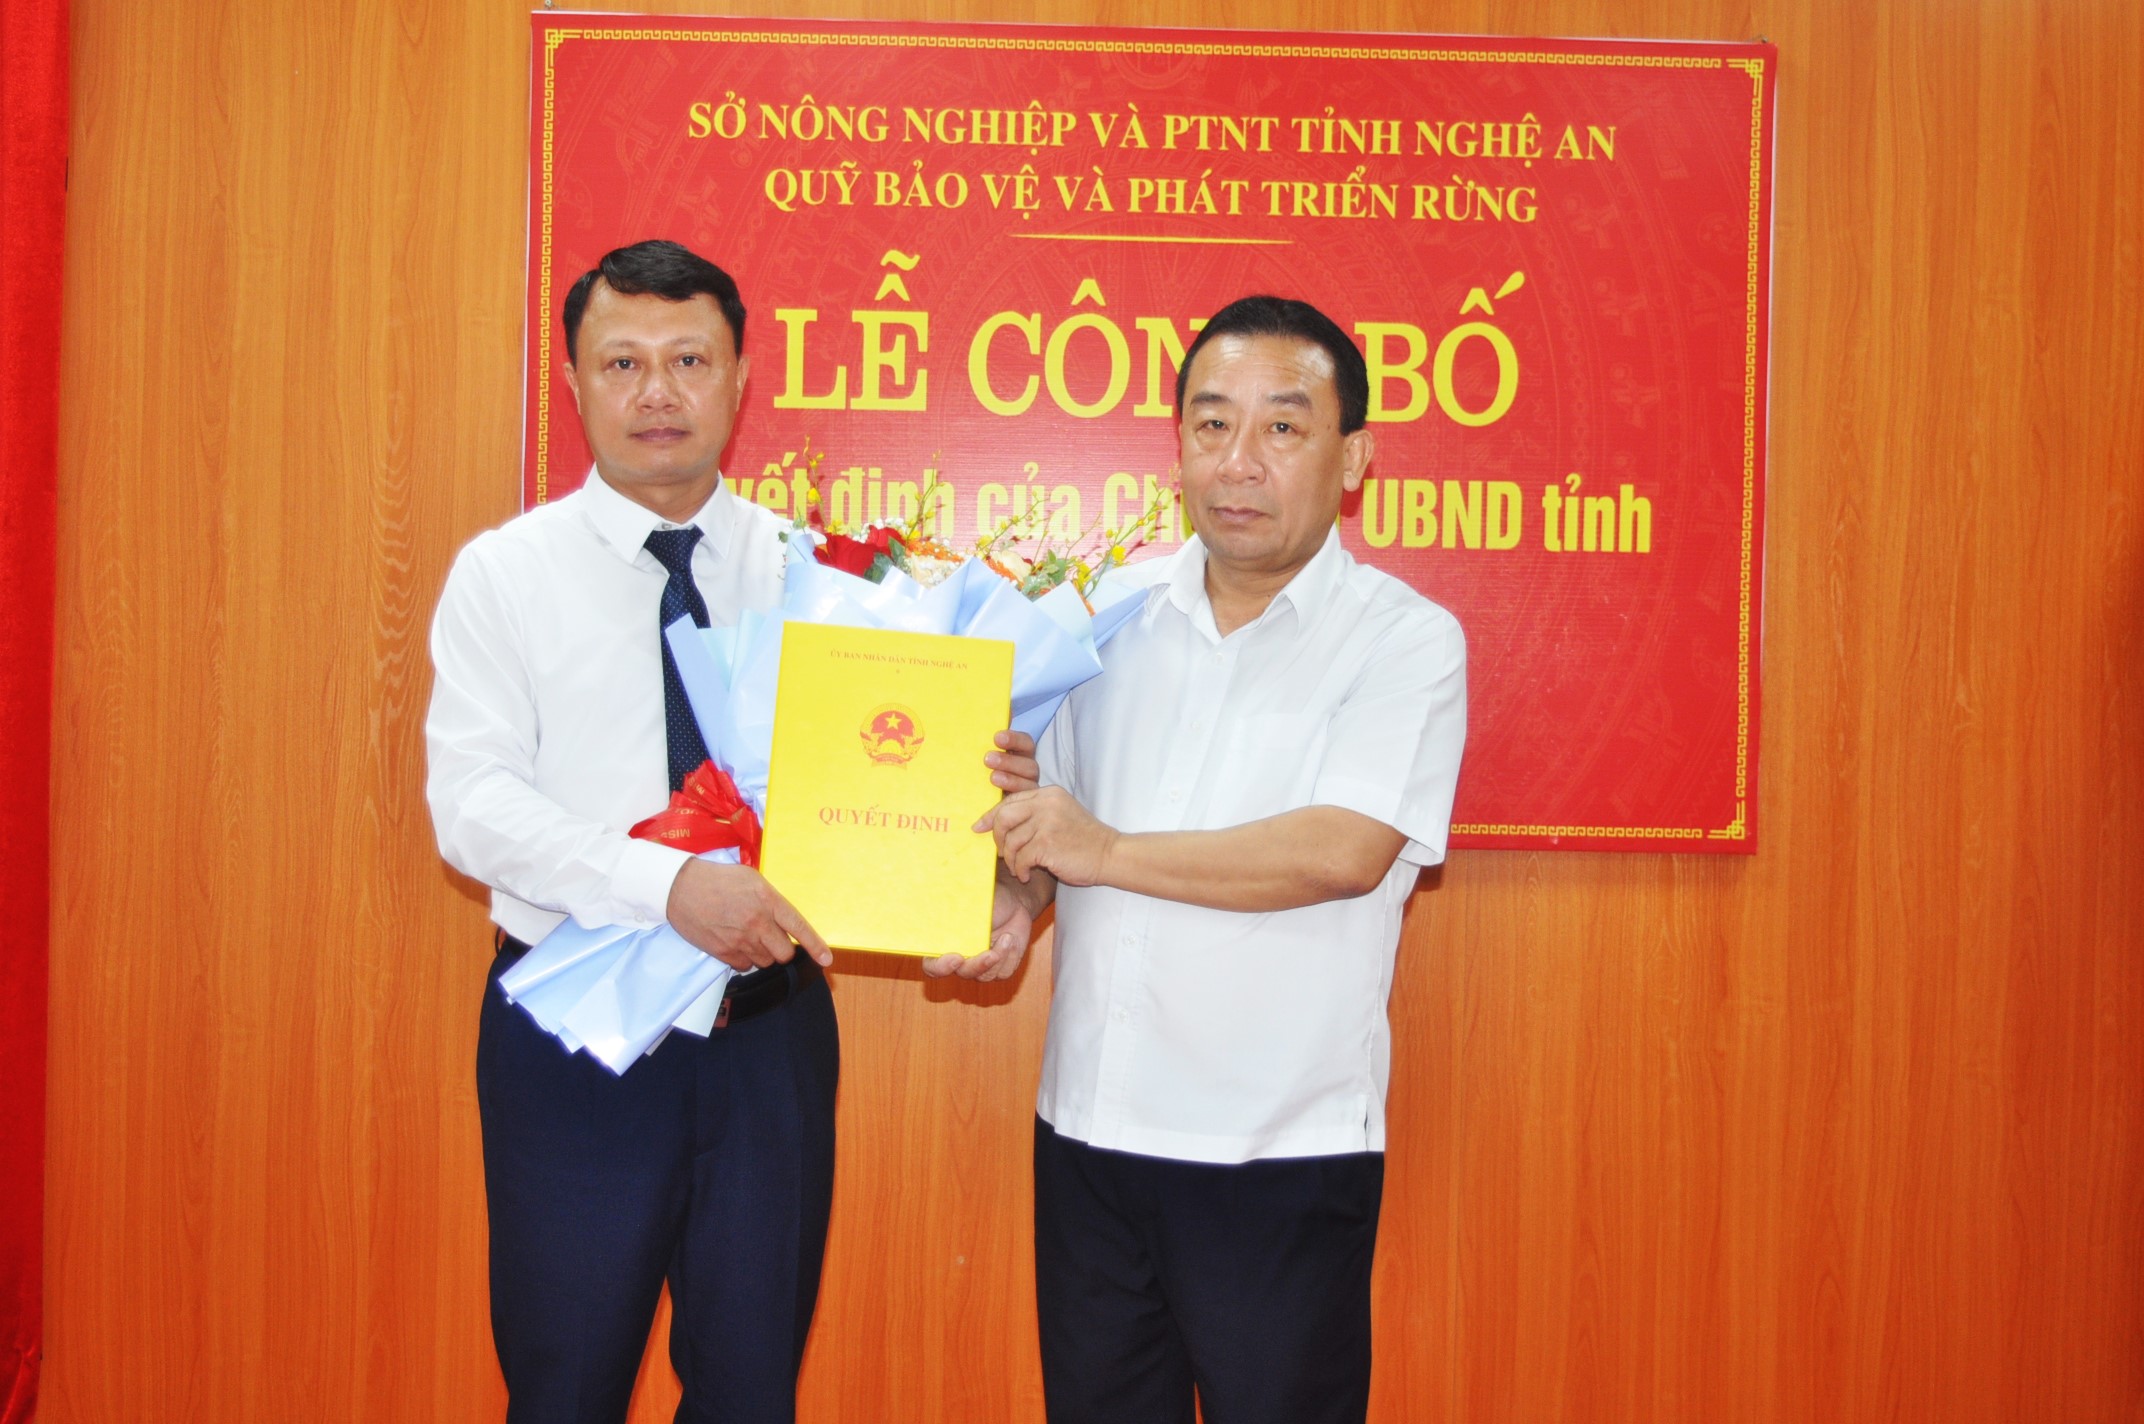 Công bố quyết định về việc điều động, bổ nhiệm Giám đốc Quỹ Bảo vệ và Phát triển rừng tỉnh Nghệ An